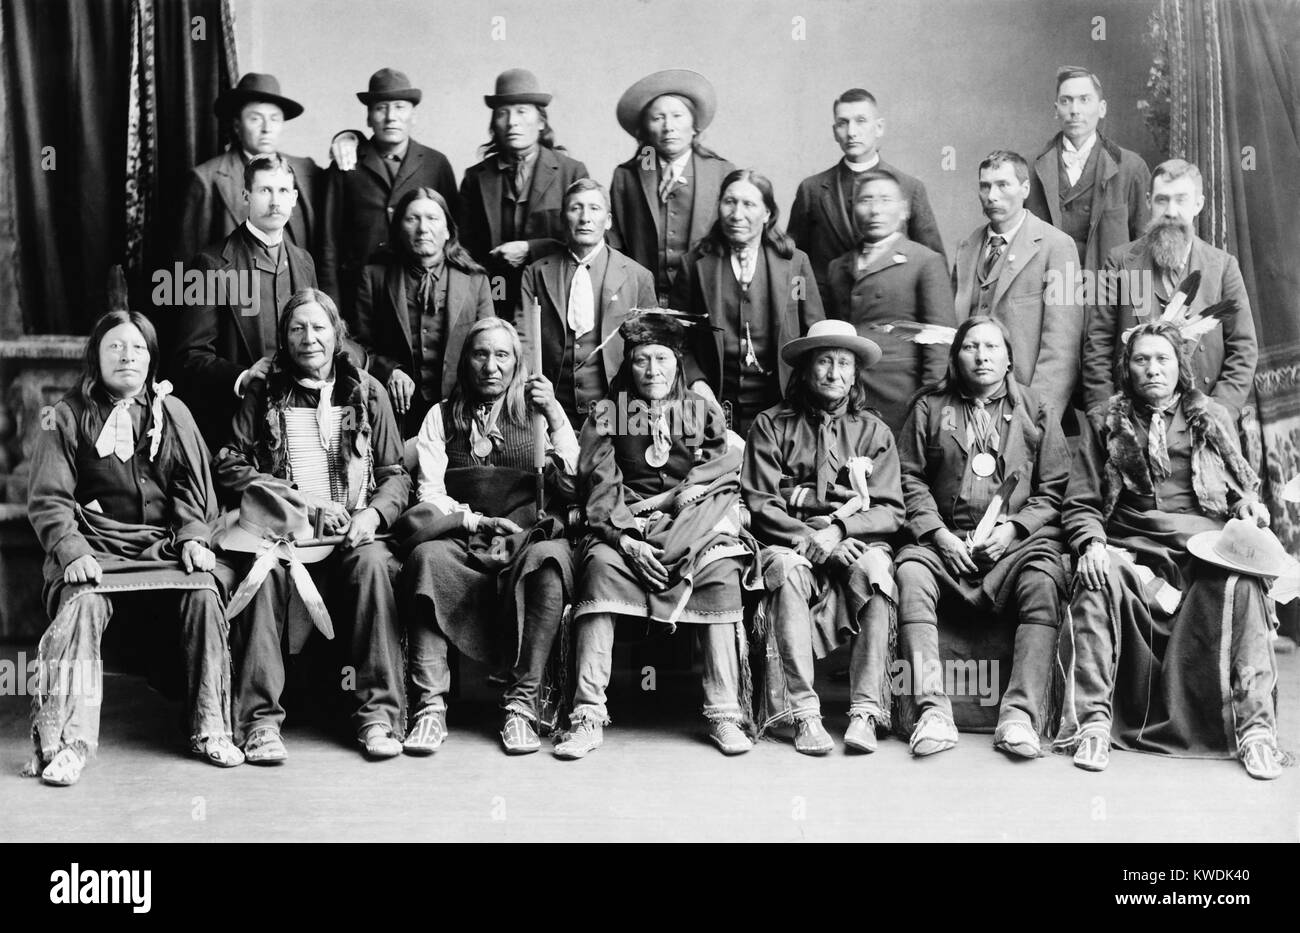 Sioux Delegation in Washington, D.C., von Charles Bell im Jahr 1891 fotografiert. Nachdem Sie einen Friedensvertrag mit der US-Regierung nach dem Wounded Knee Massaker von Dez. 29, 1890 signiert wurde, können sie nach Washington gereist als Delegation. Vordere Reihe, L-R: High Hawk, Feuer Blitzschlag, kleine Wunde, zwei Streik, Young-Man - Afraid-Of - His-Horses, Spotted Elk, und große Straße. Zweite Reihe, 4. von links ist der amerikanische Pferd (BSLOC 2017 18 30) Stockfoto